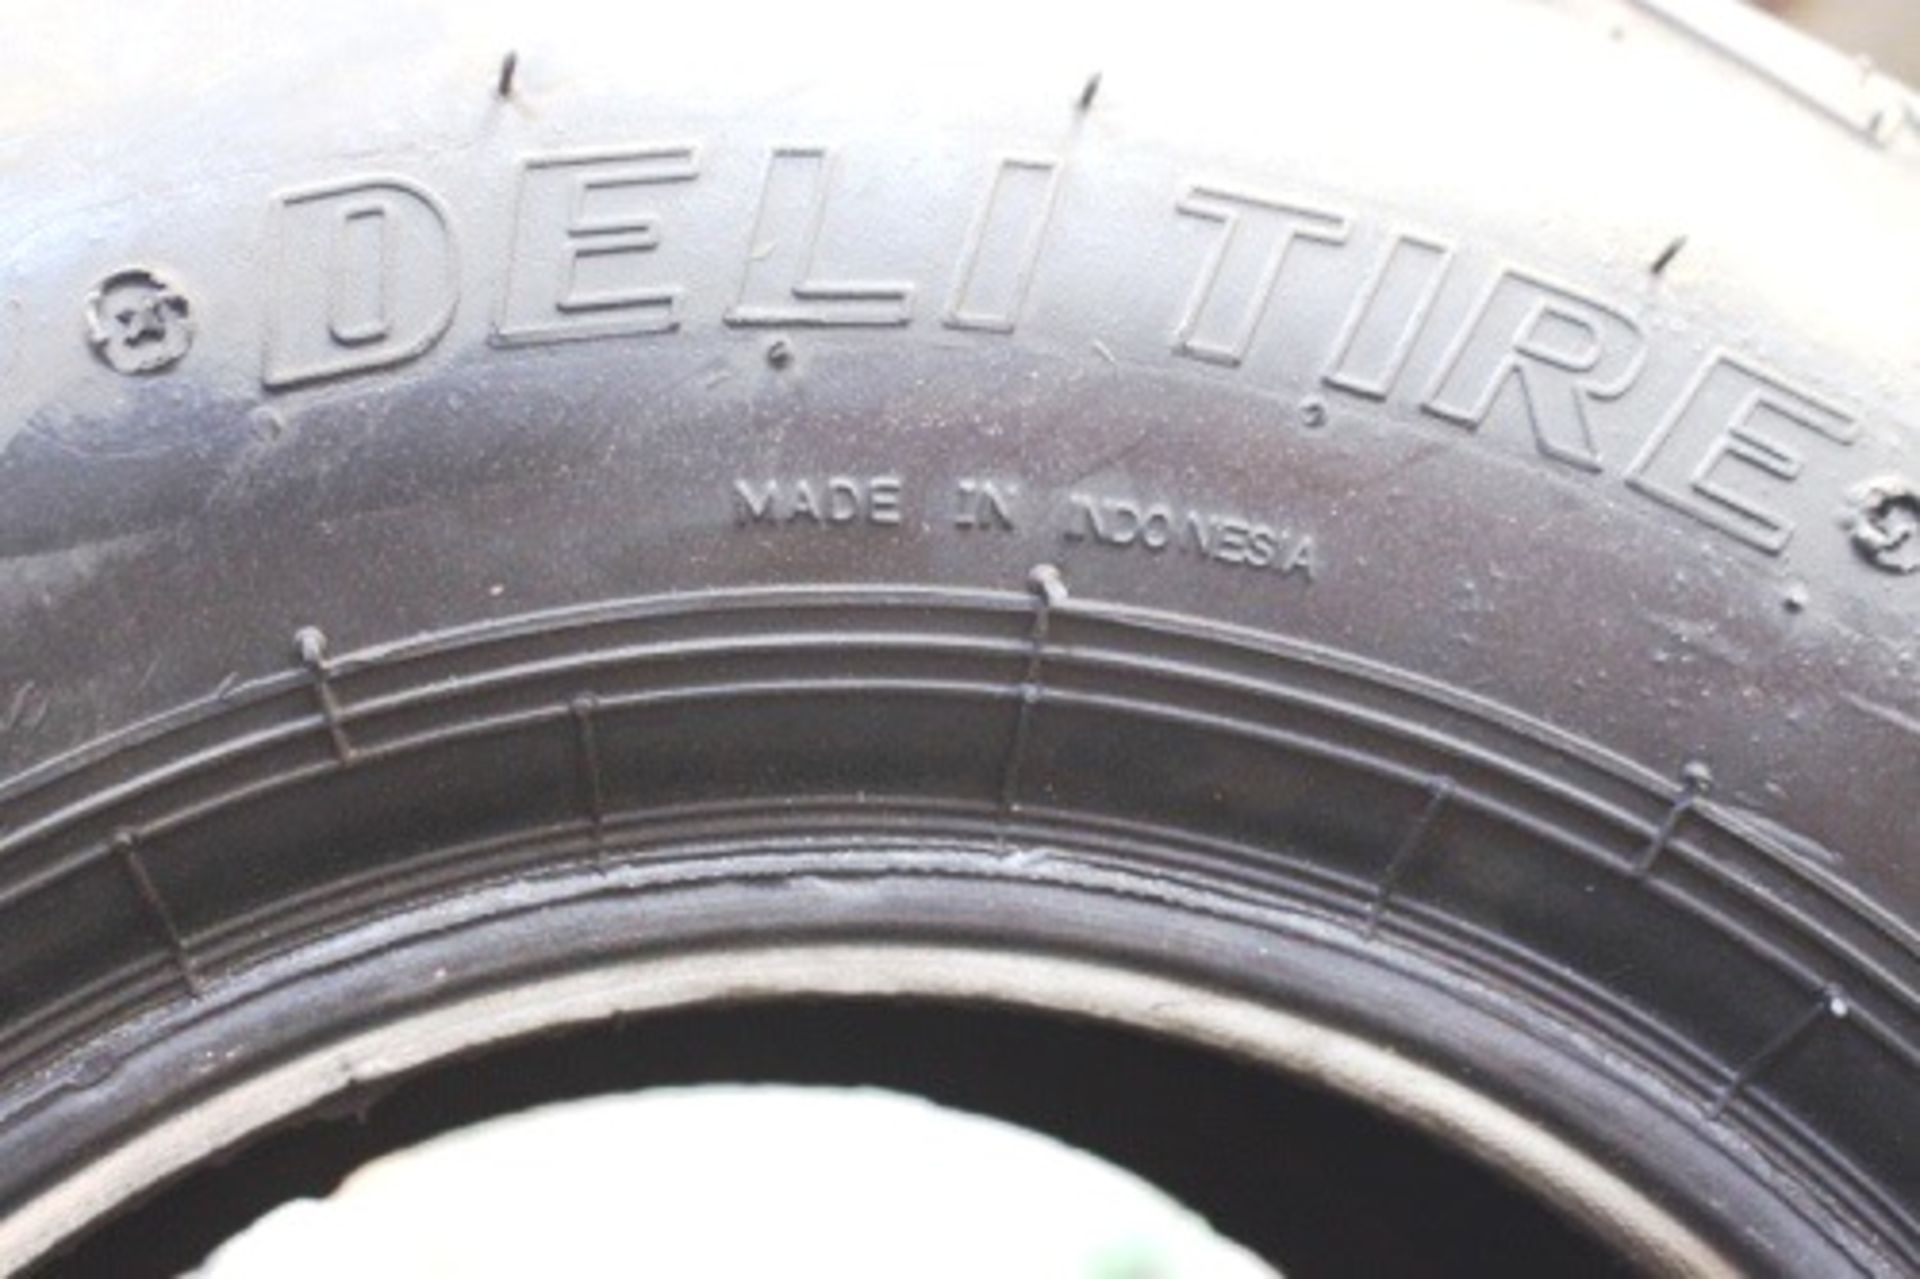 3 x Deli tyres, 2.05x8.0-10 - New (GS10)